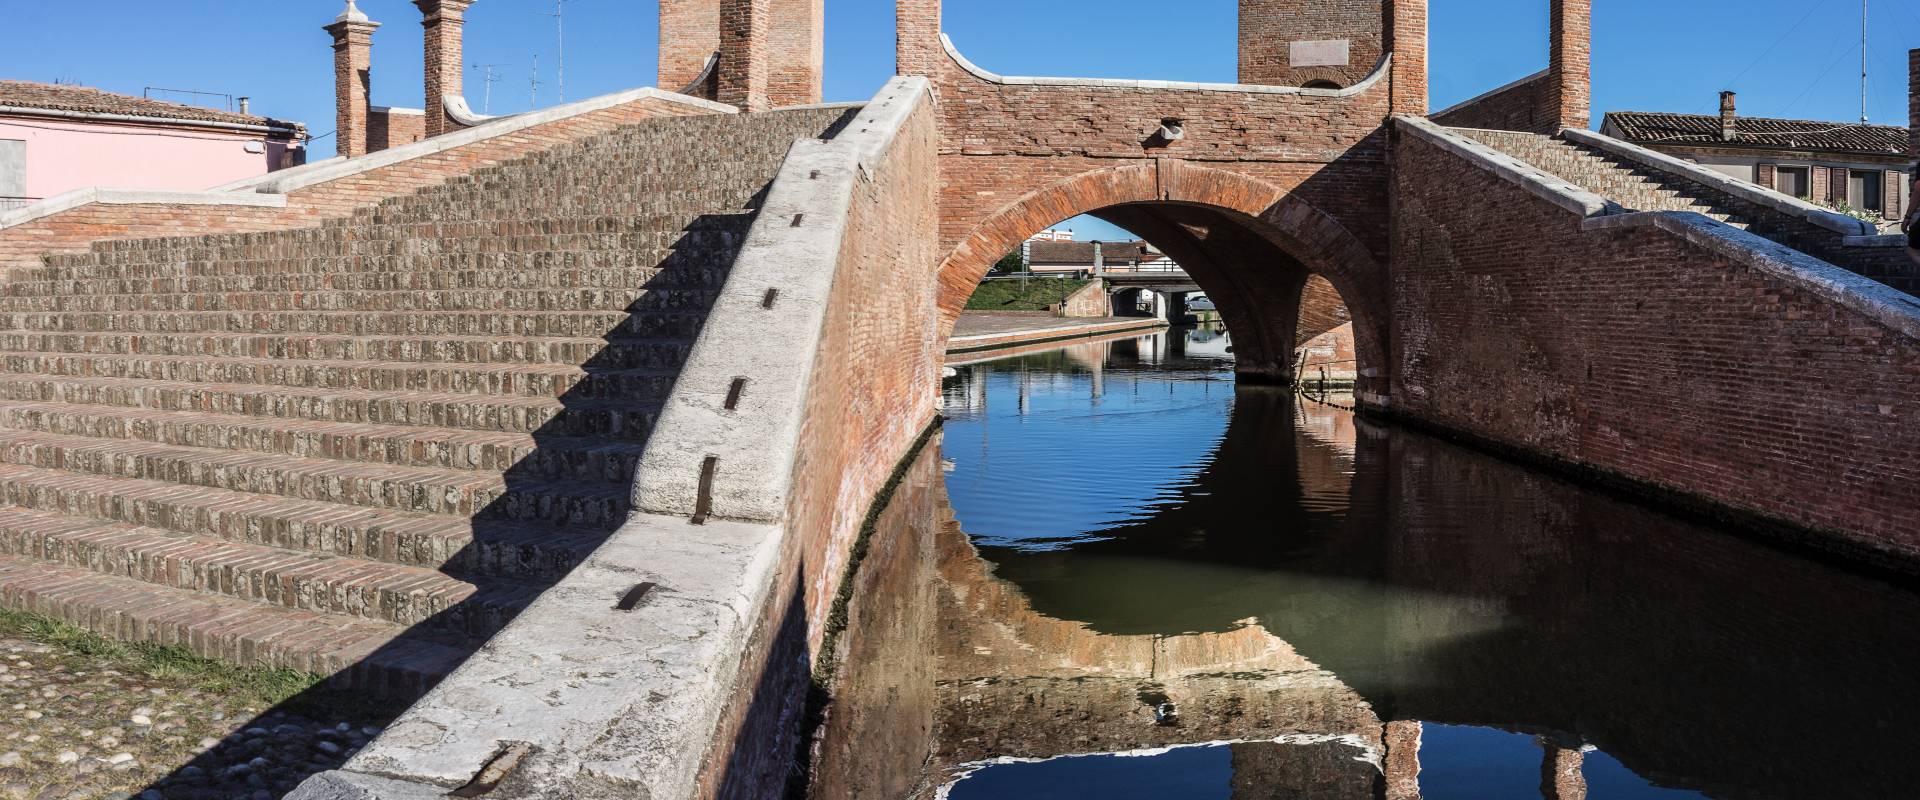 Il Trepponti di Comacchio - foto di Vanni Lazzari